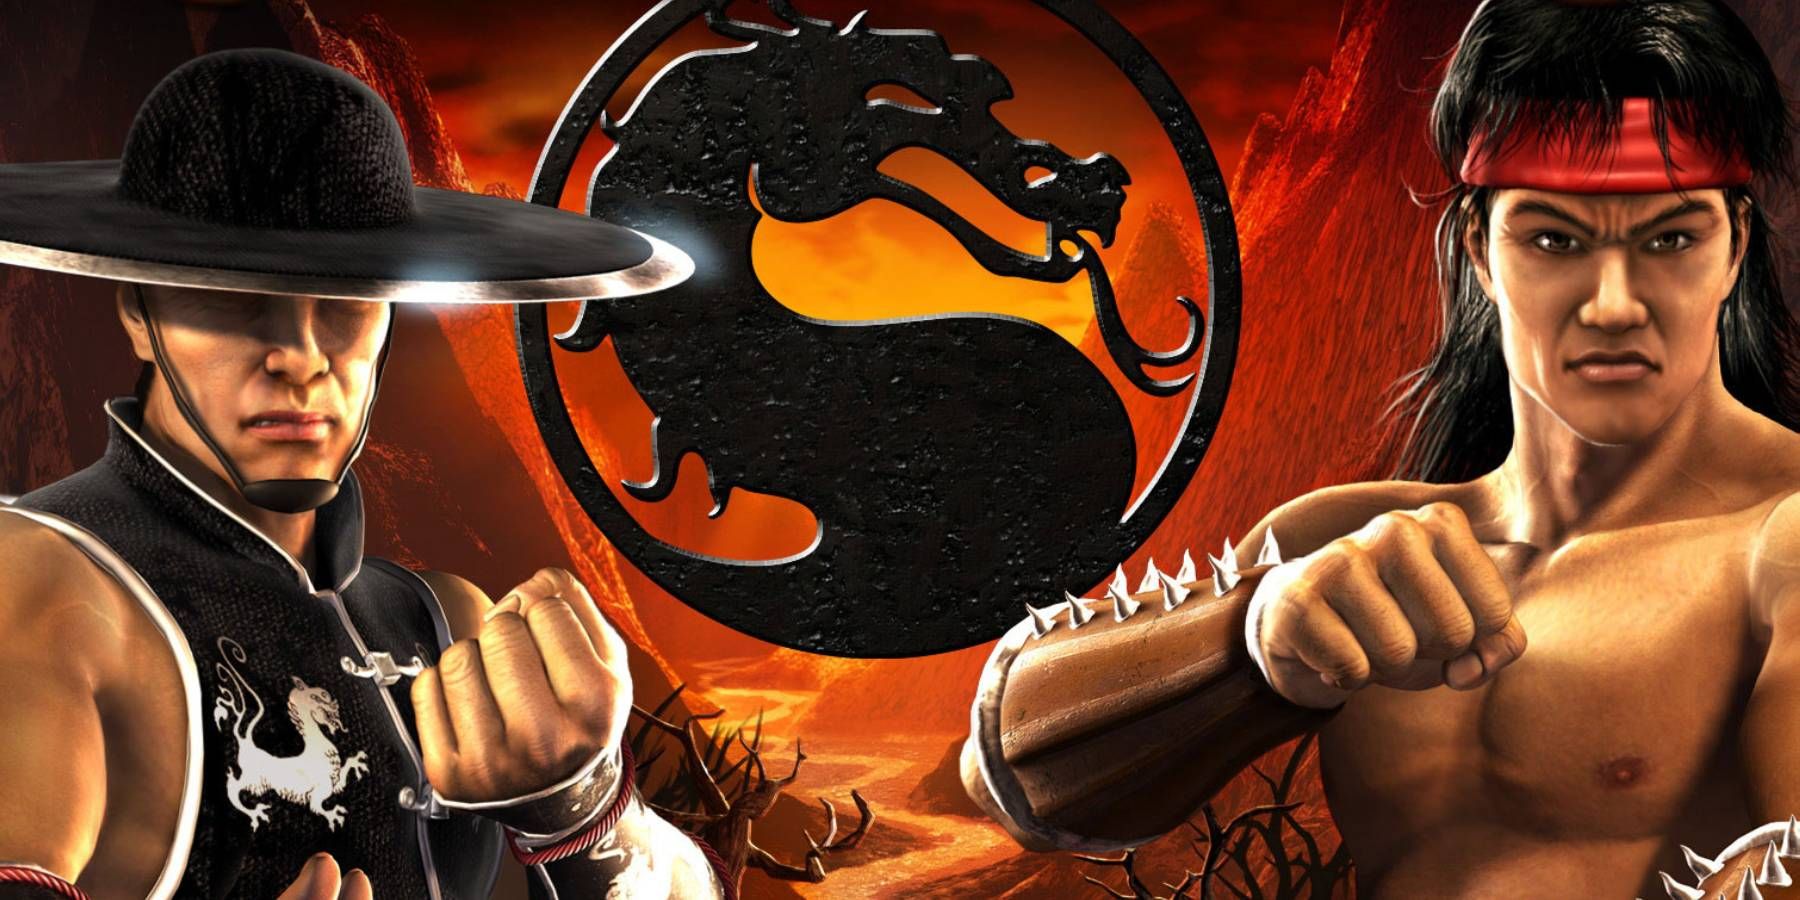 Kung Lao and Liu Kang from Mortal Kombat: Shaolin Monks box art